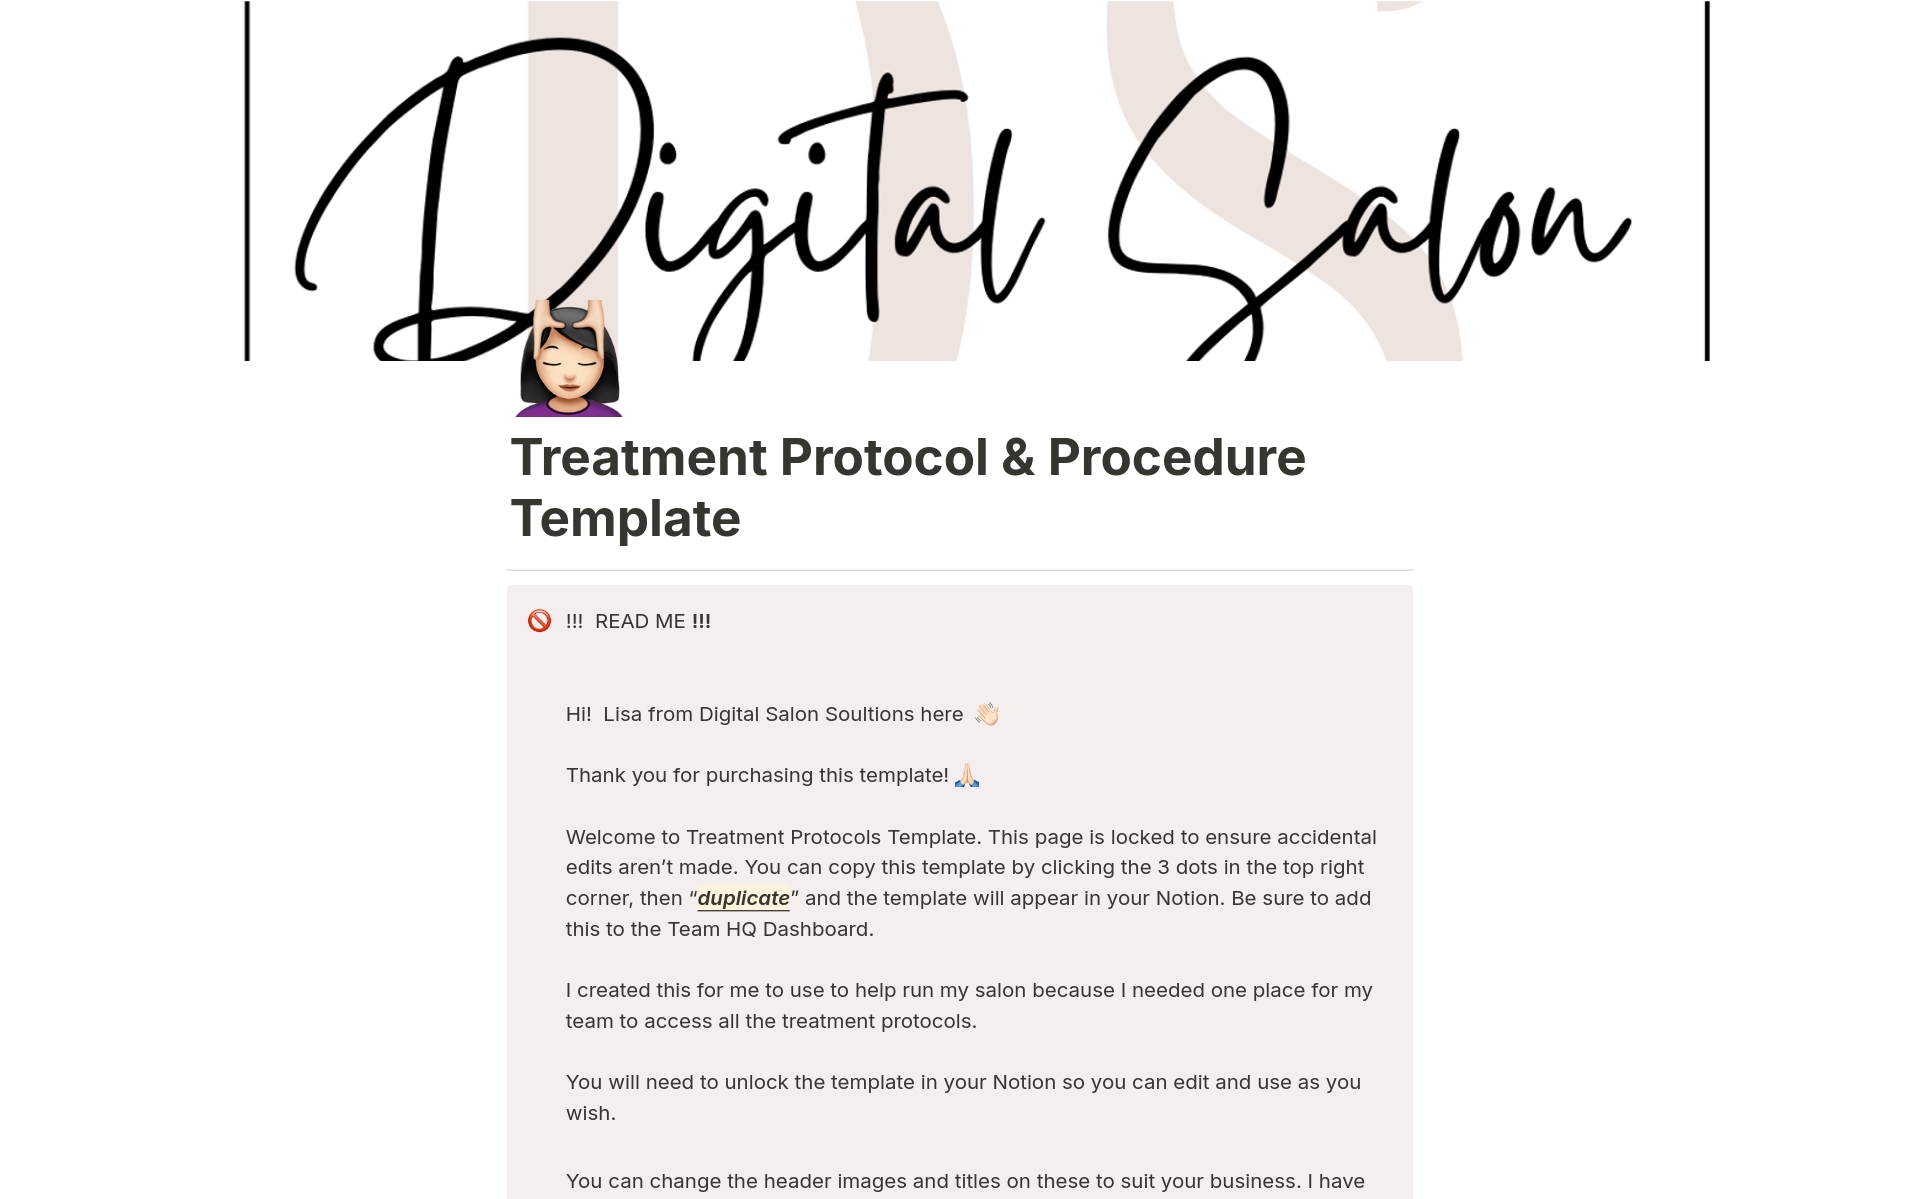 Vista previa de una plantilla para Treatment Protocol & Procedure Template